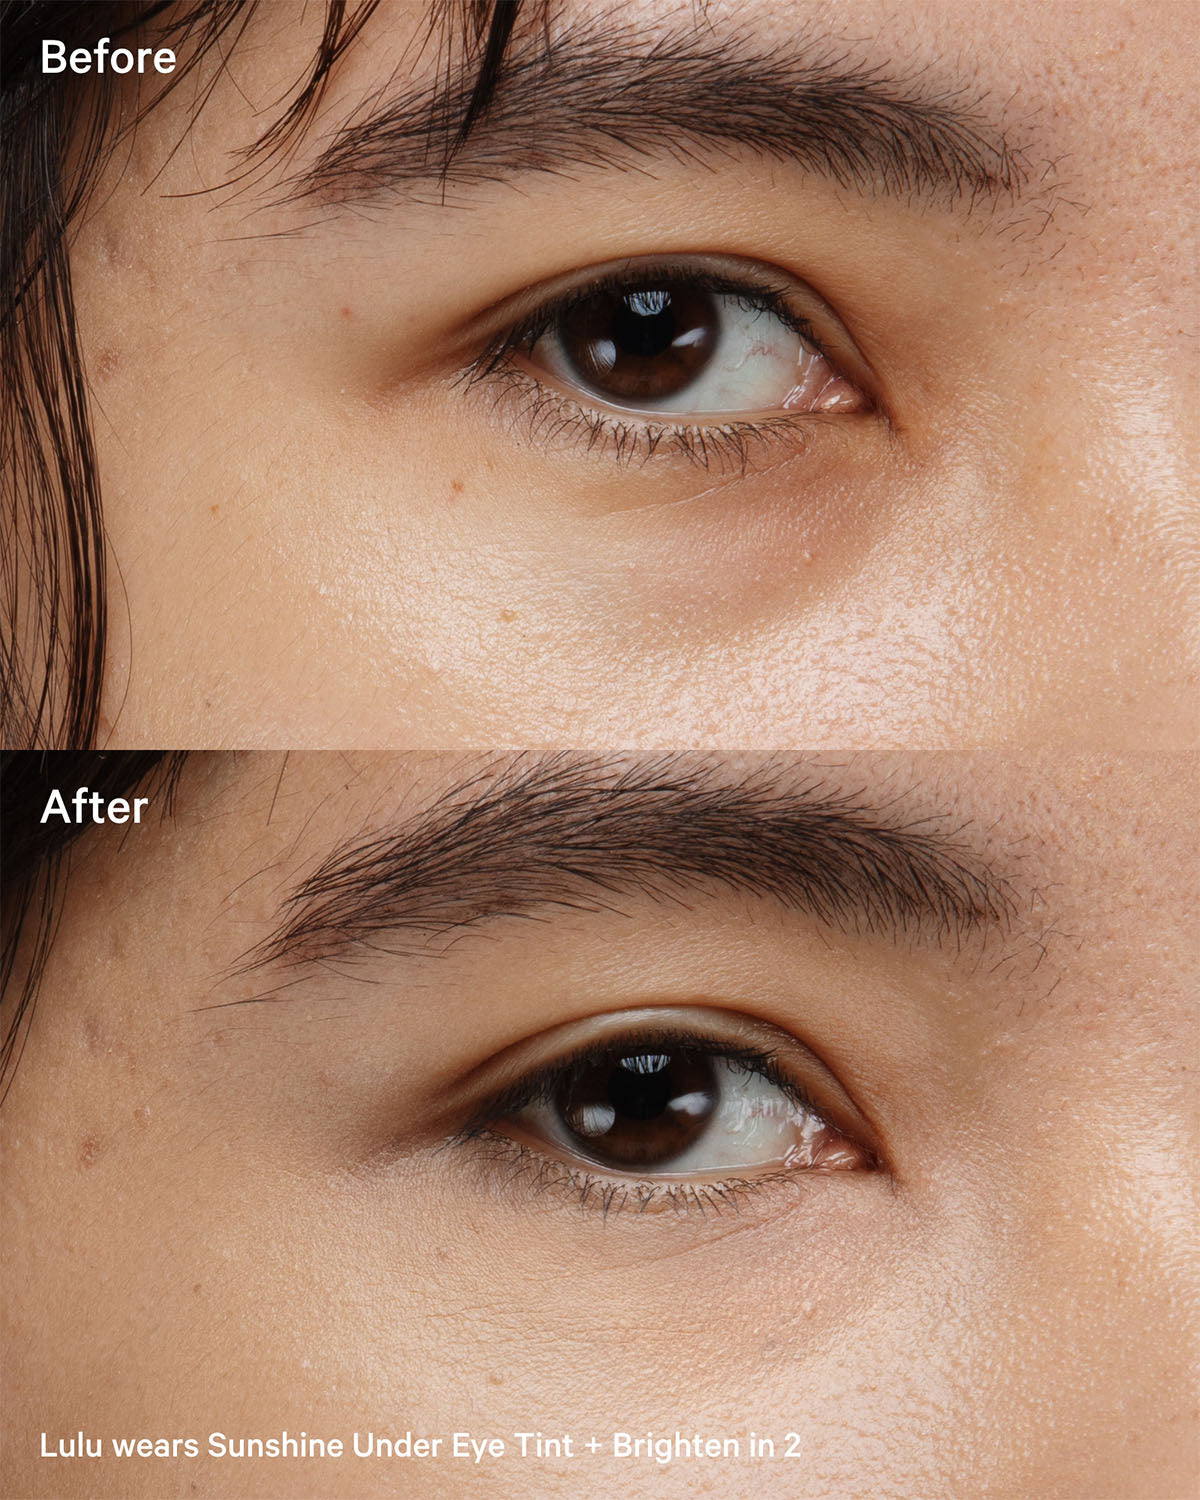 Sunshine-Under-Eye-Tint+Brighten-2-Before-After